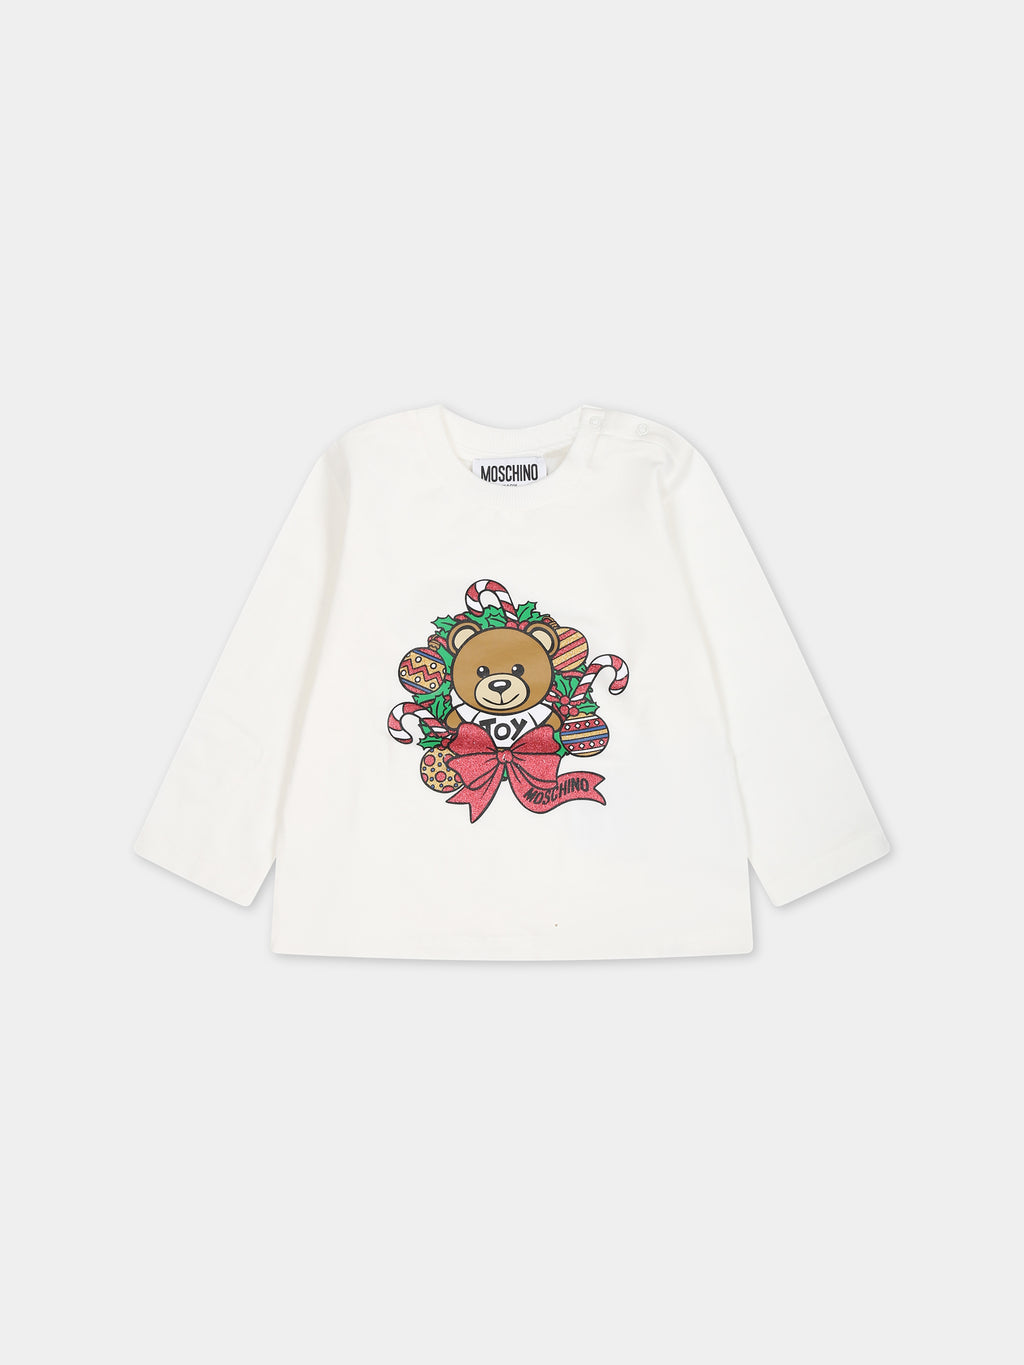 T-shirt blanc pour bébé enfants avec Teddy bear et logo